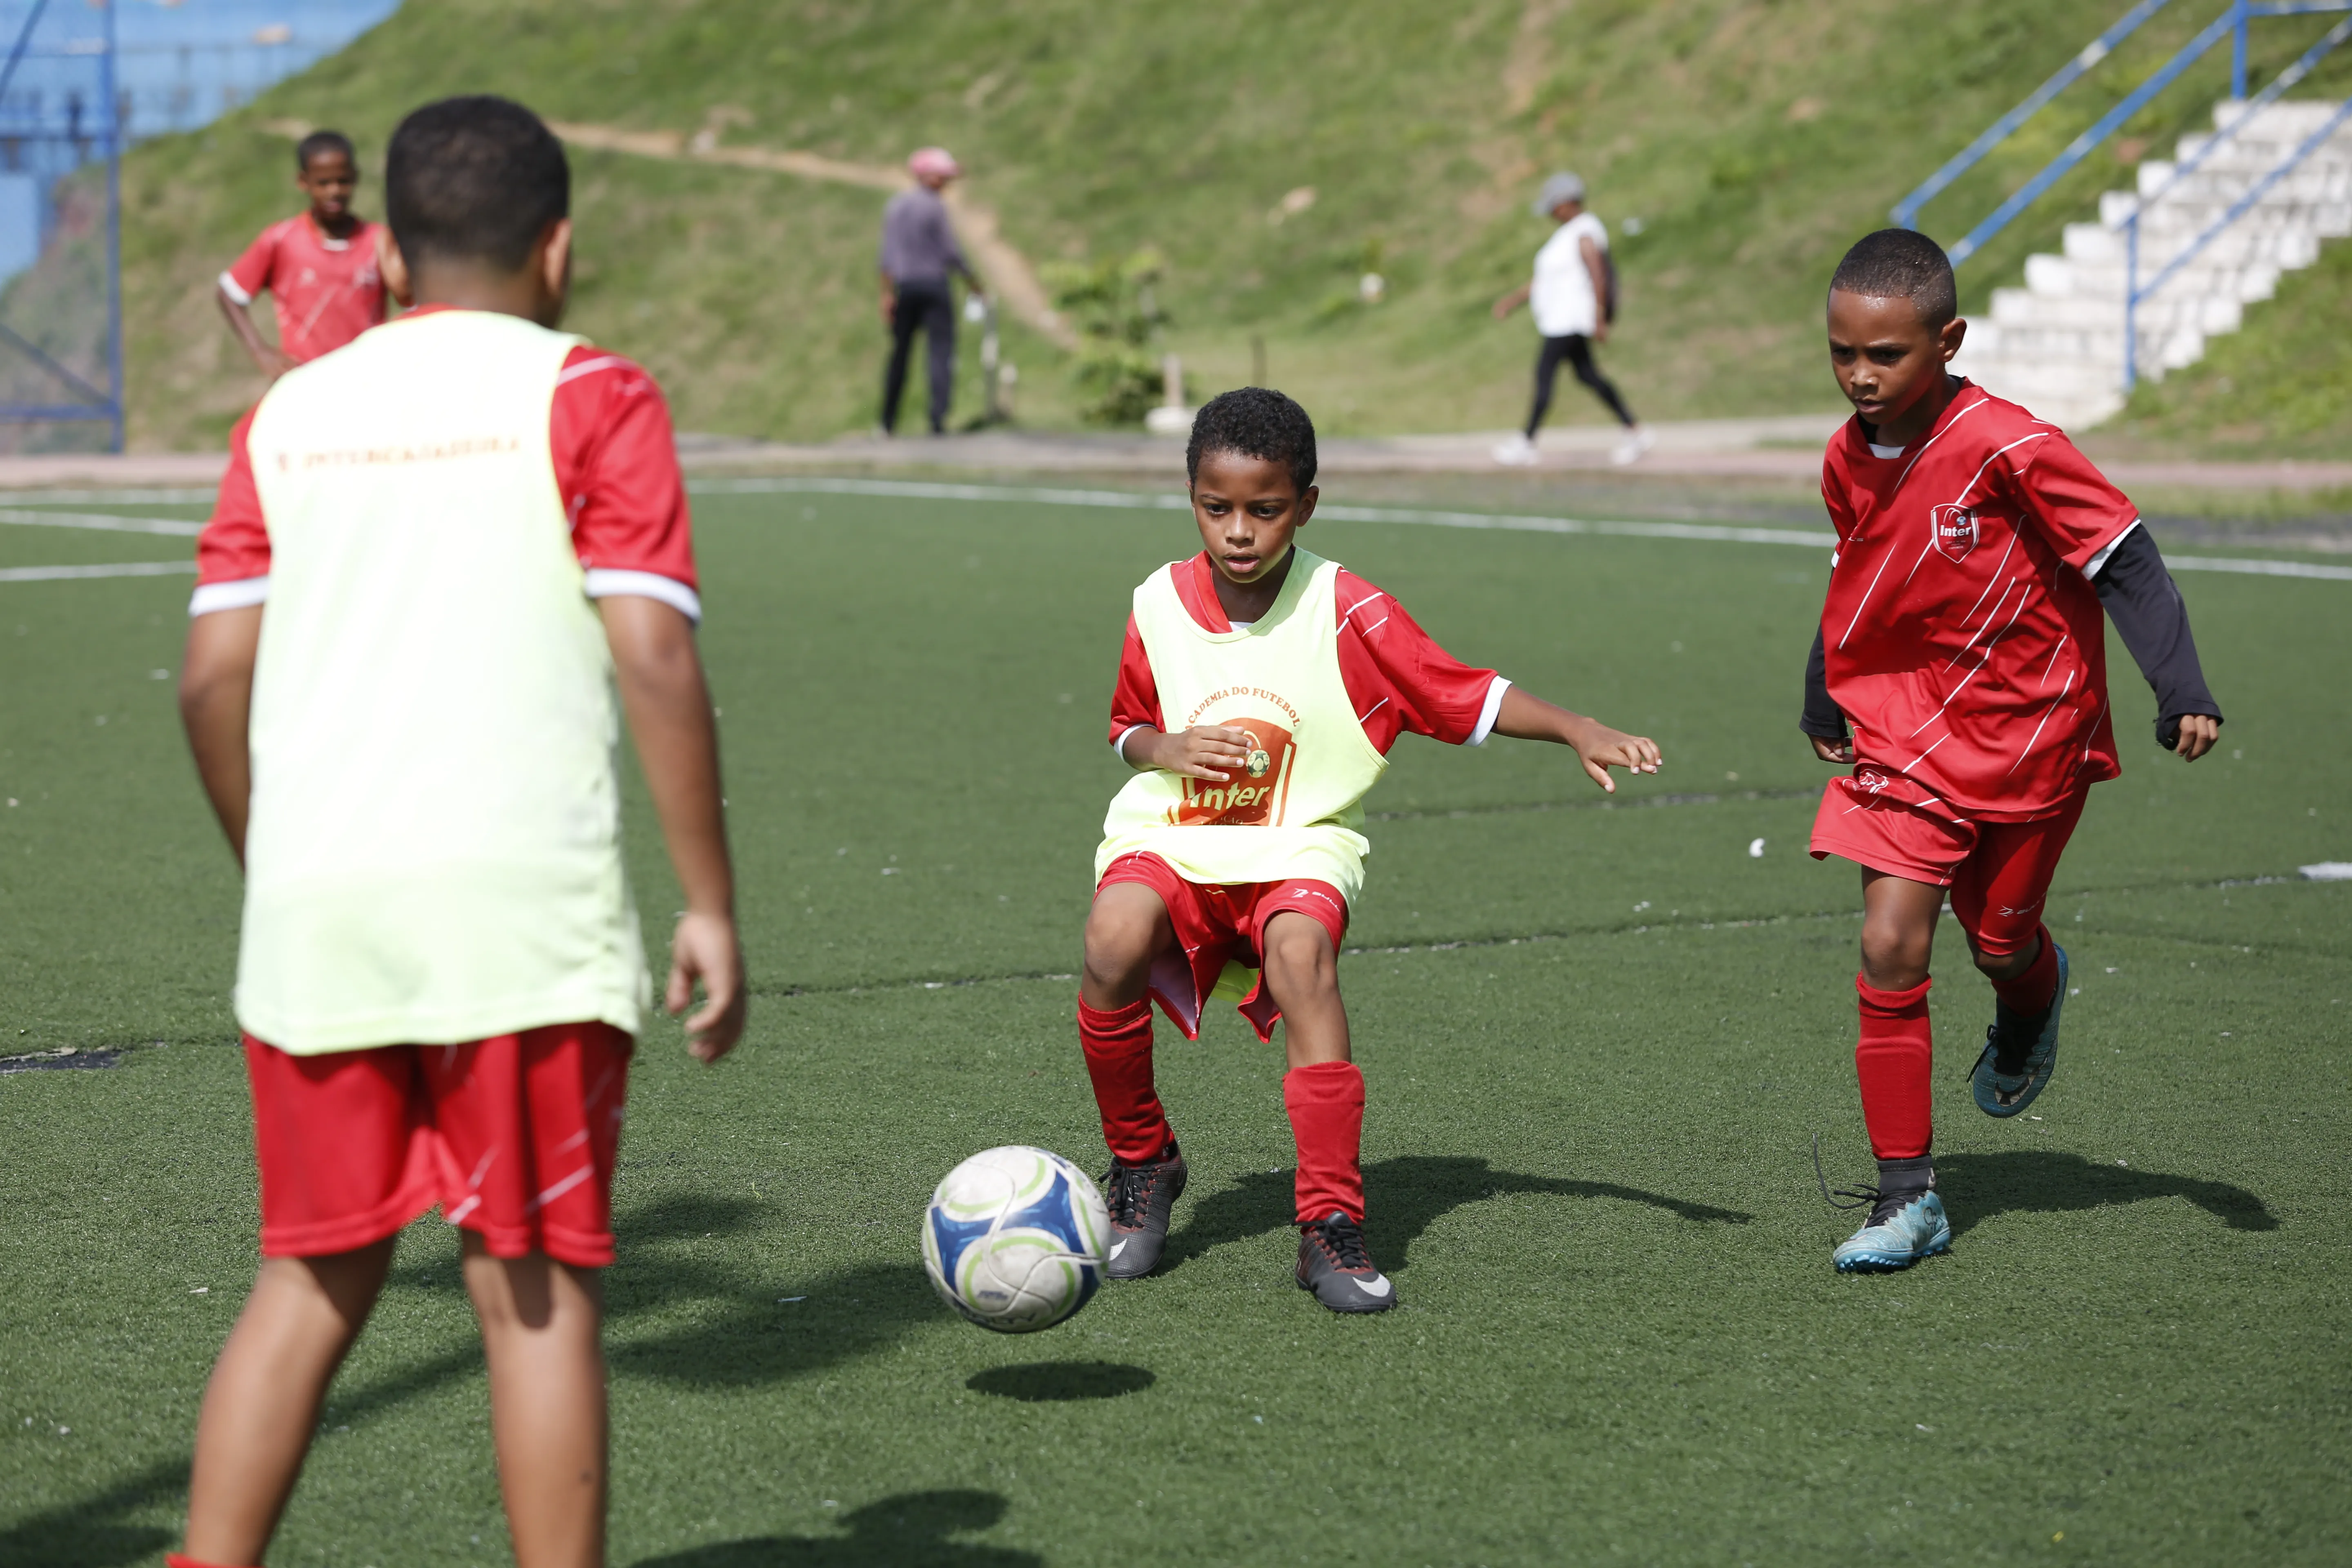 Escolinha de futebol Inter Cajazeiras começou como uma brincadeira de um professor de educação física há mais de 15 anos. O projeto oferece aulas de futebol para meninos e meninas